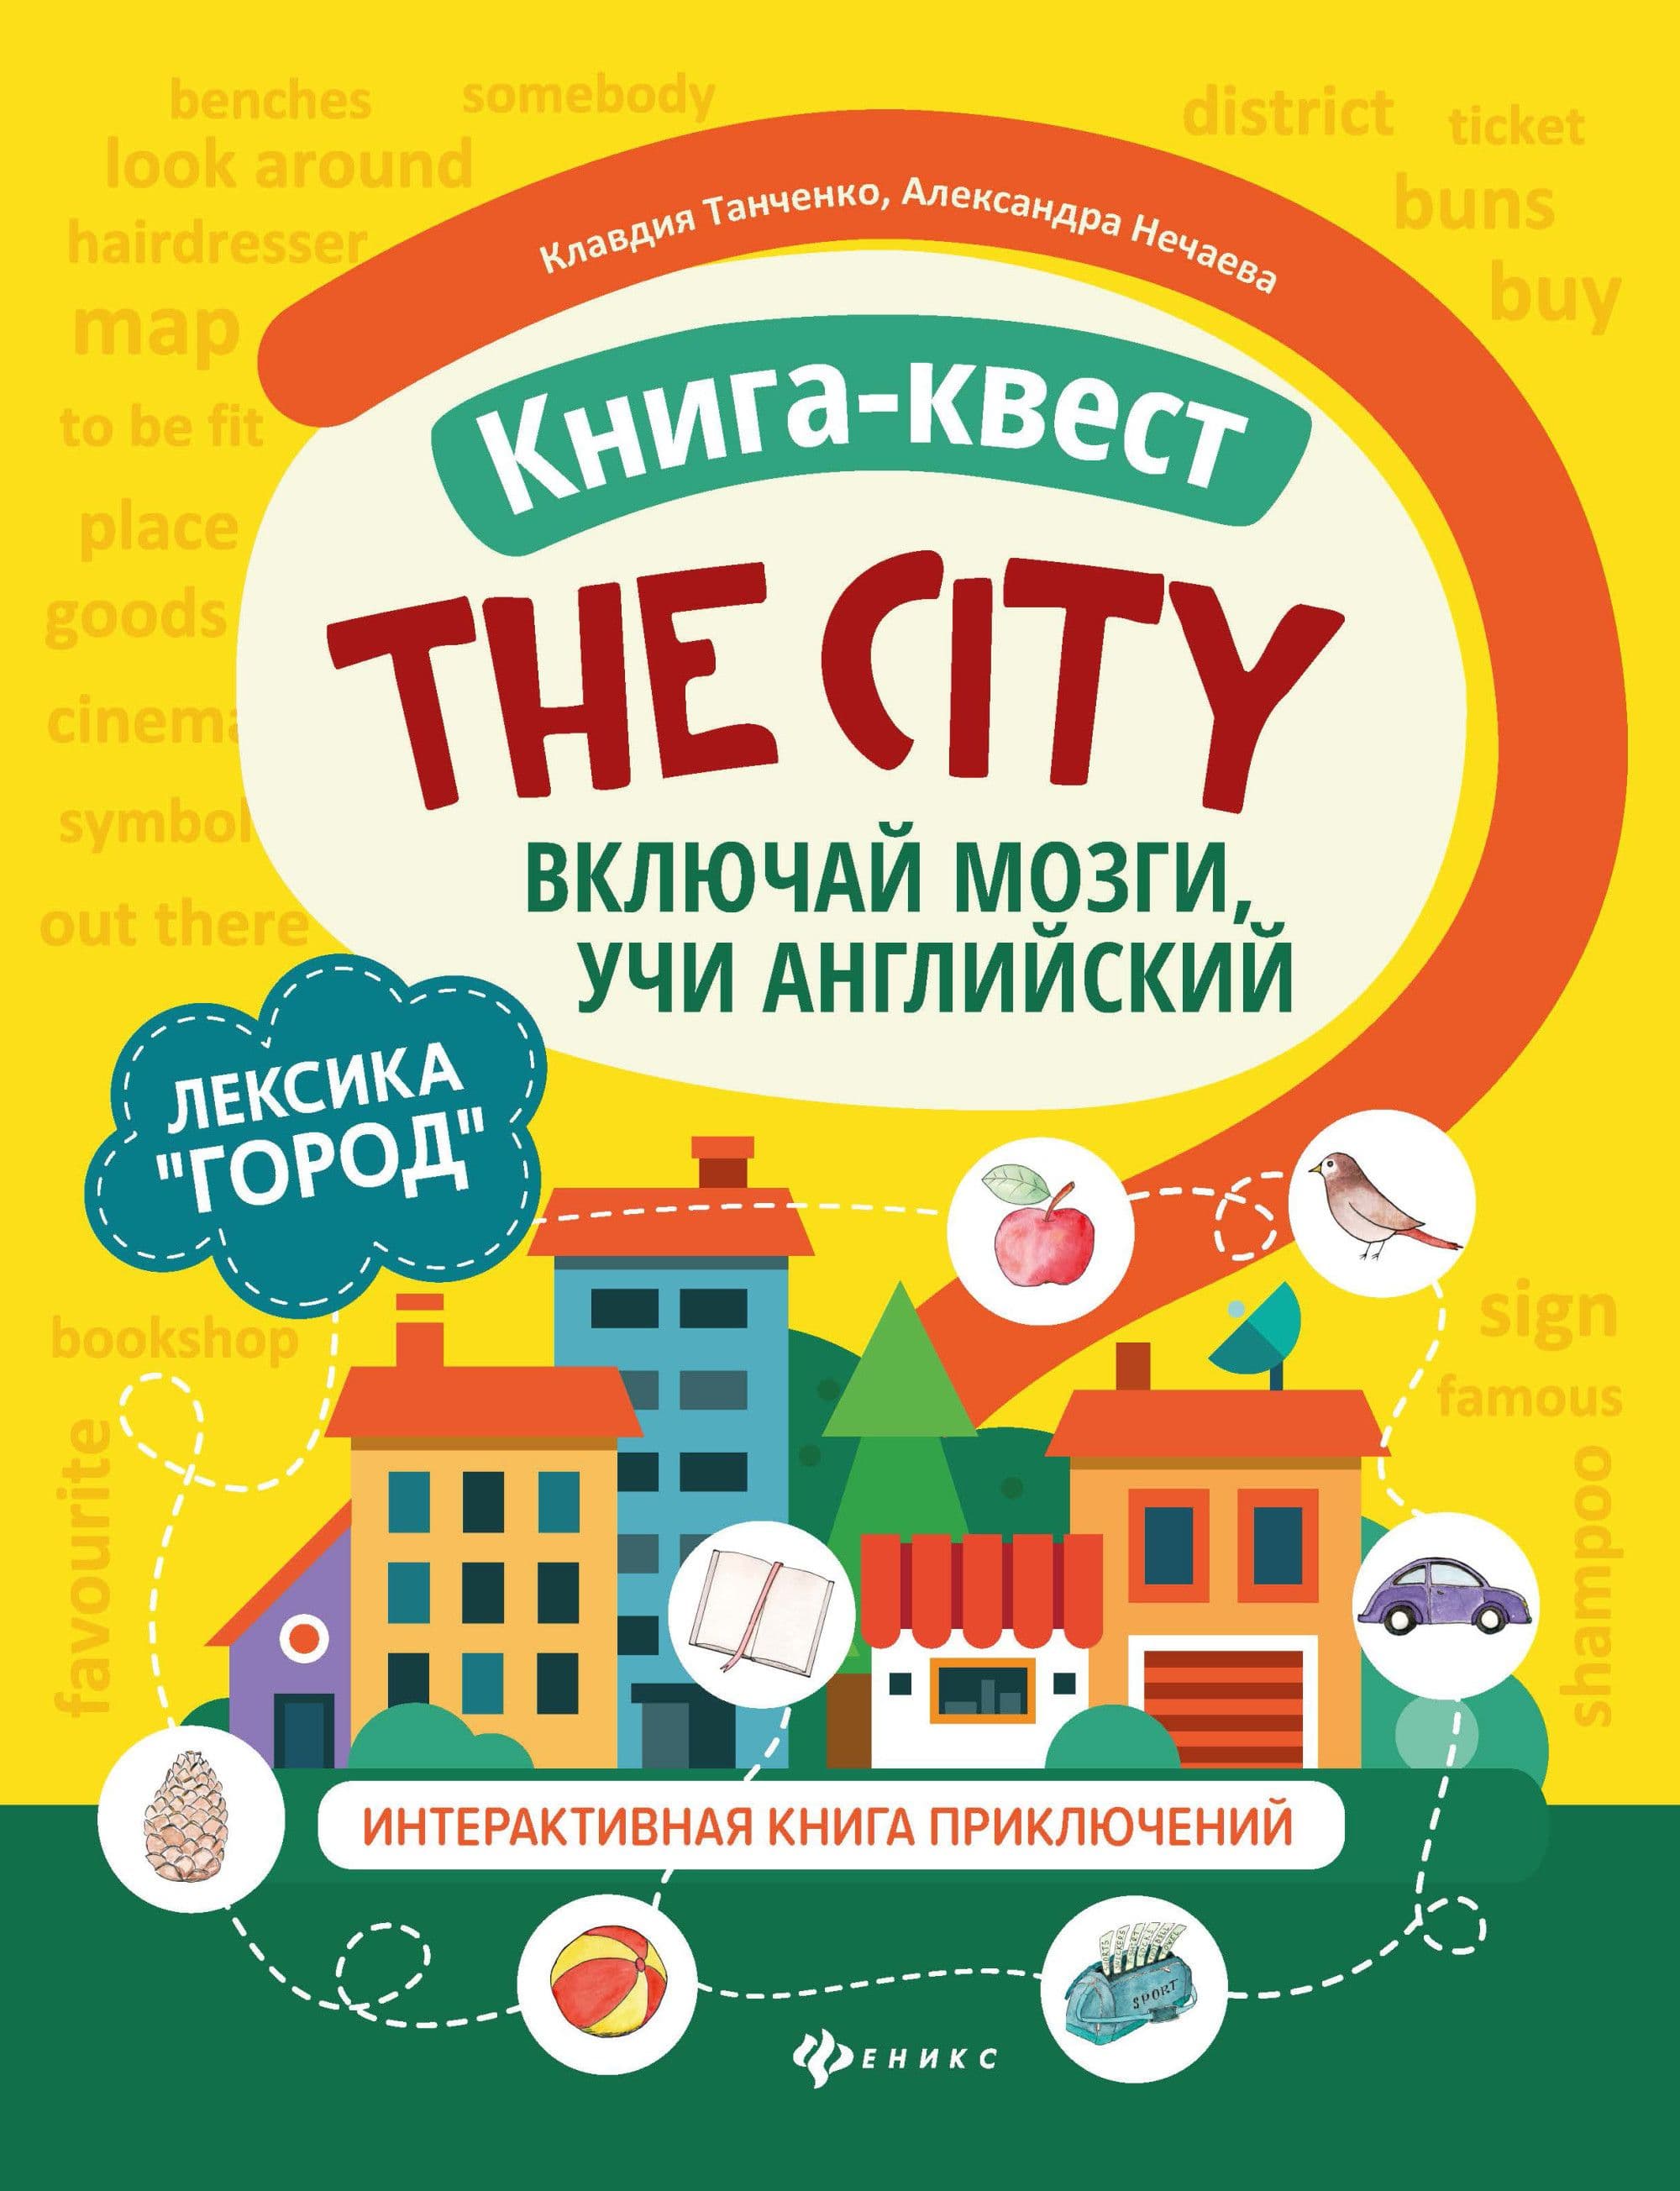 Книга-квест"The city":лексика"Город":интерактивная книга приключений - купить в магазине Кассандра, фото, 9785222336052, 